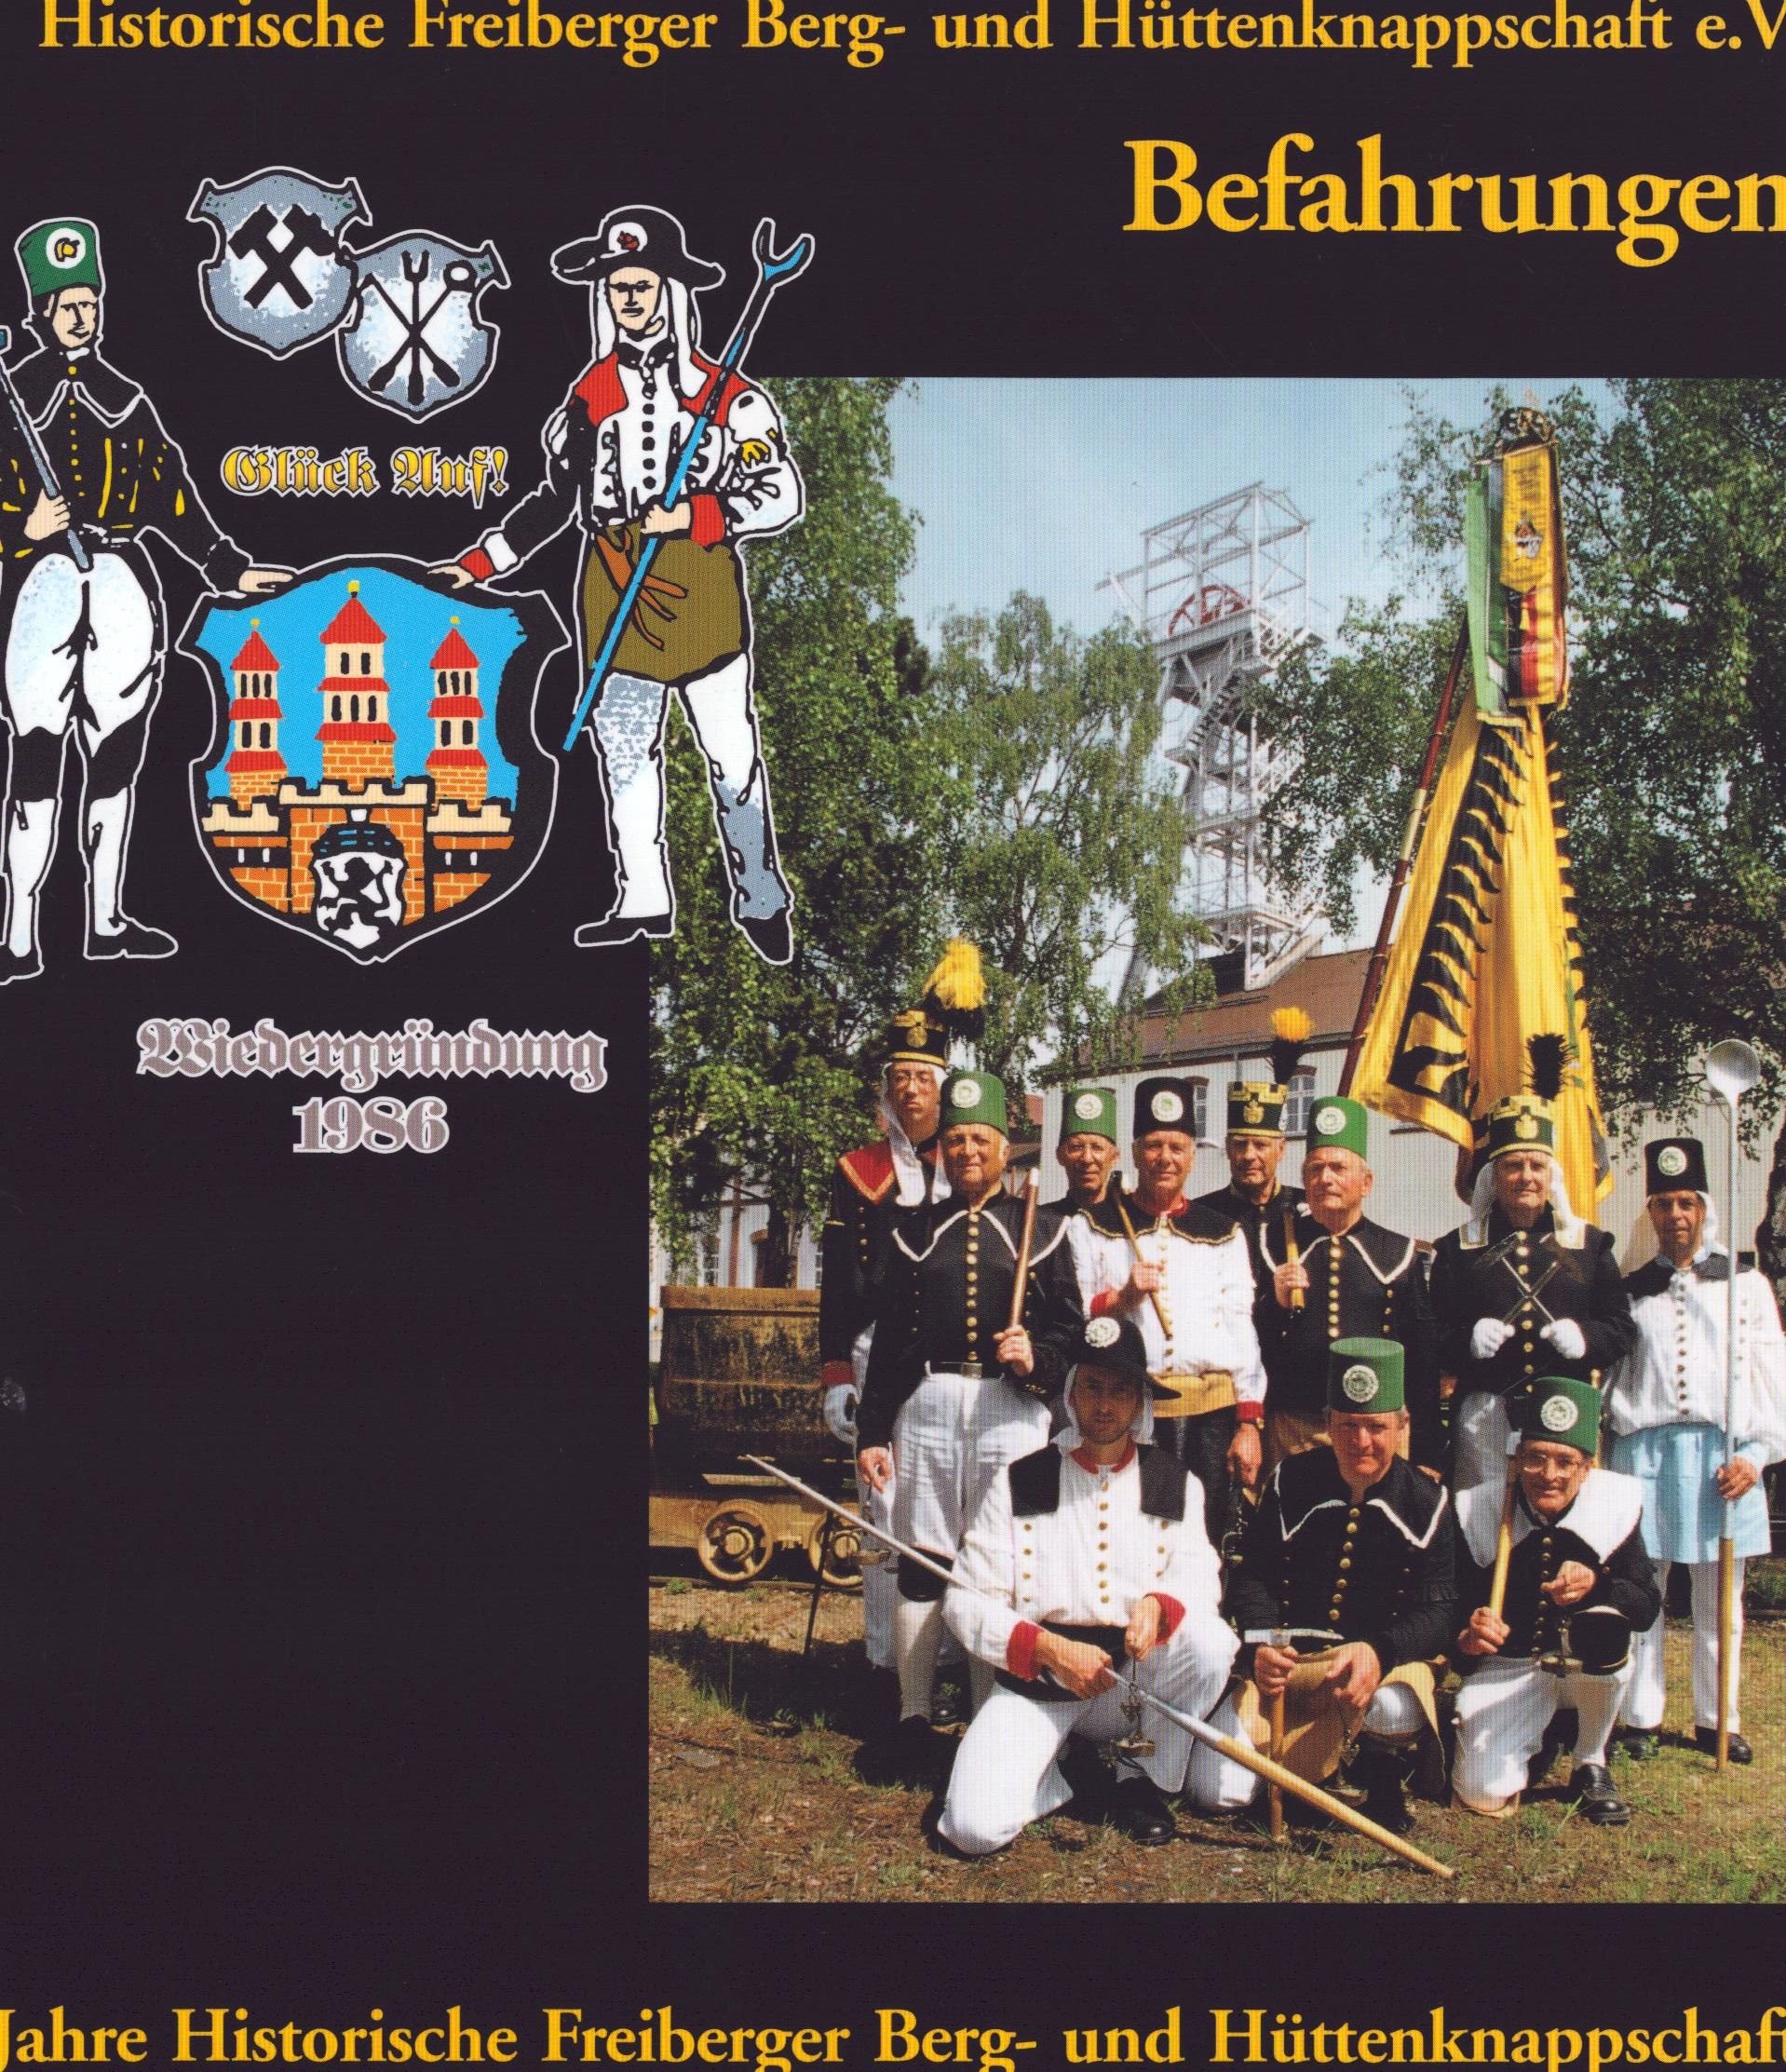 15 Jahre Historische Freiberger Berg- und Hüttenknappschaft e. V. - Befahrungen 3 (Archiv SAXONIA-FREIBERG-STIFTUNG CC BY-NC-SA)